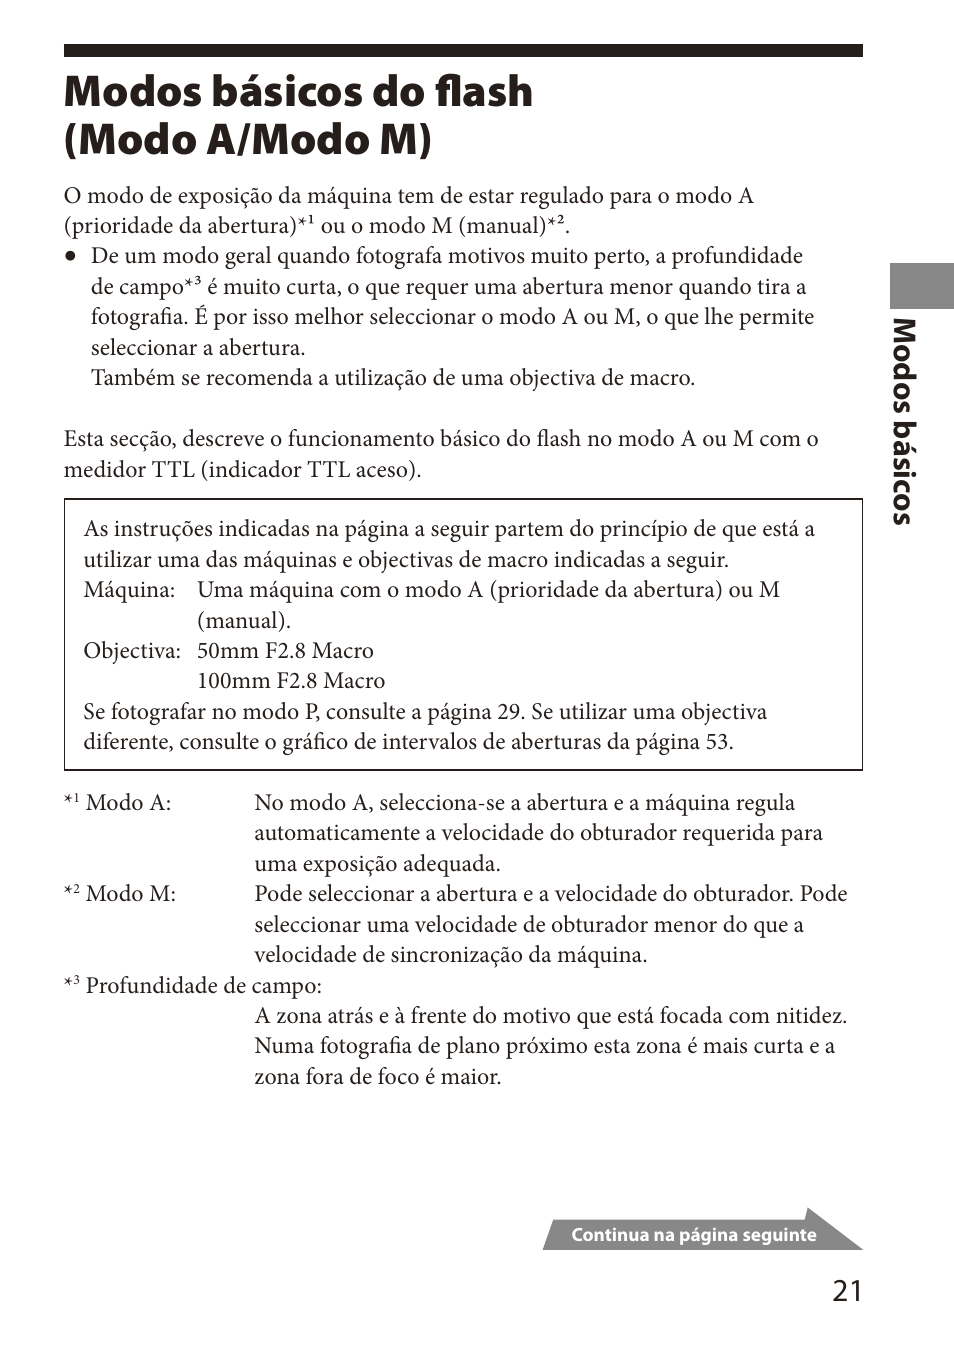 Modos básicos do flash, Modo a/modo m), Modos básicos do flash (modo a/modo m) | 1 m odos básic os | Sony HVL-MT24AM User Manual | Page 81 / 295